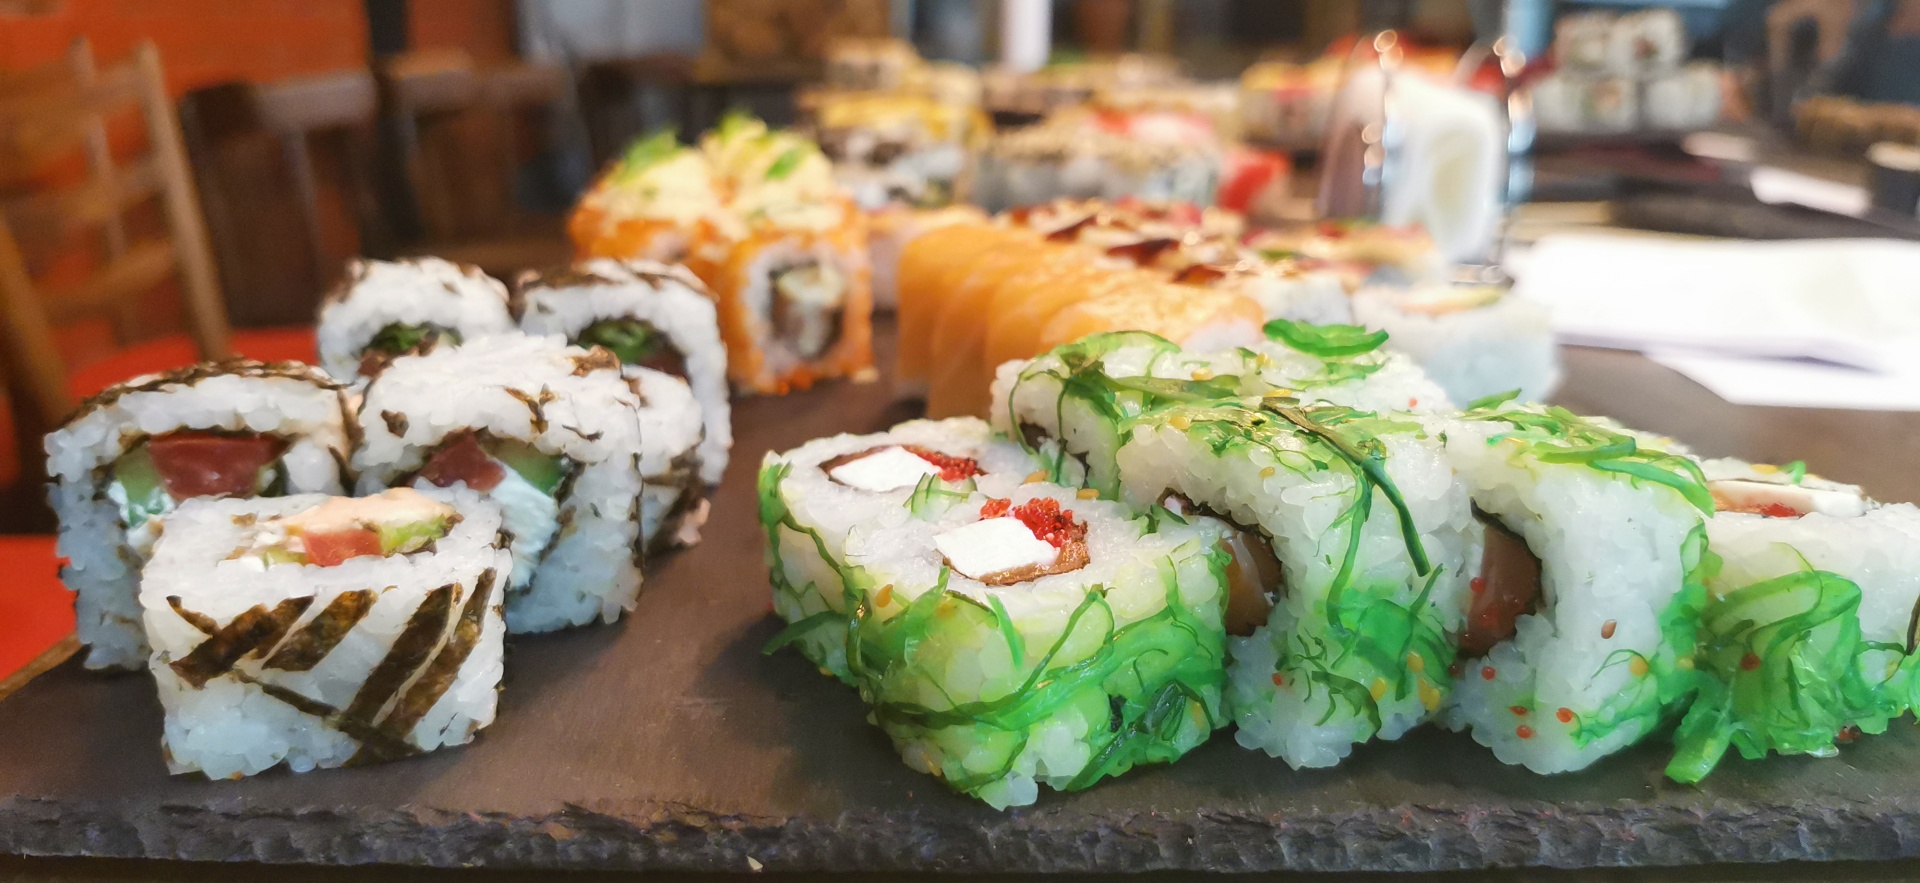 Мастер класс: как превратить приготовление суши в настоящее удовольствие